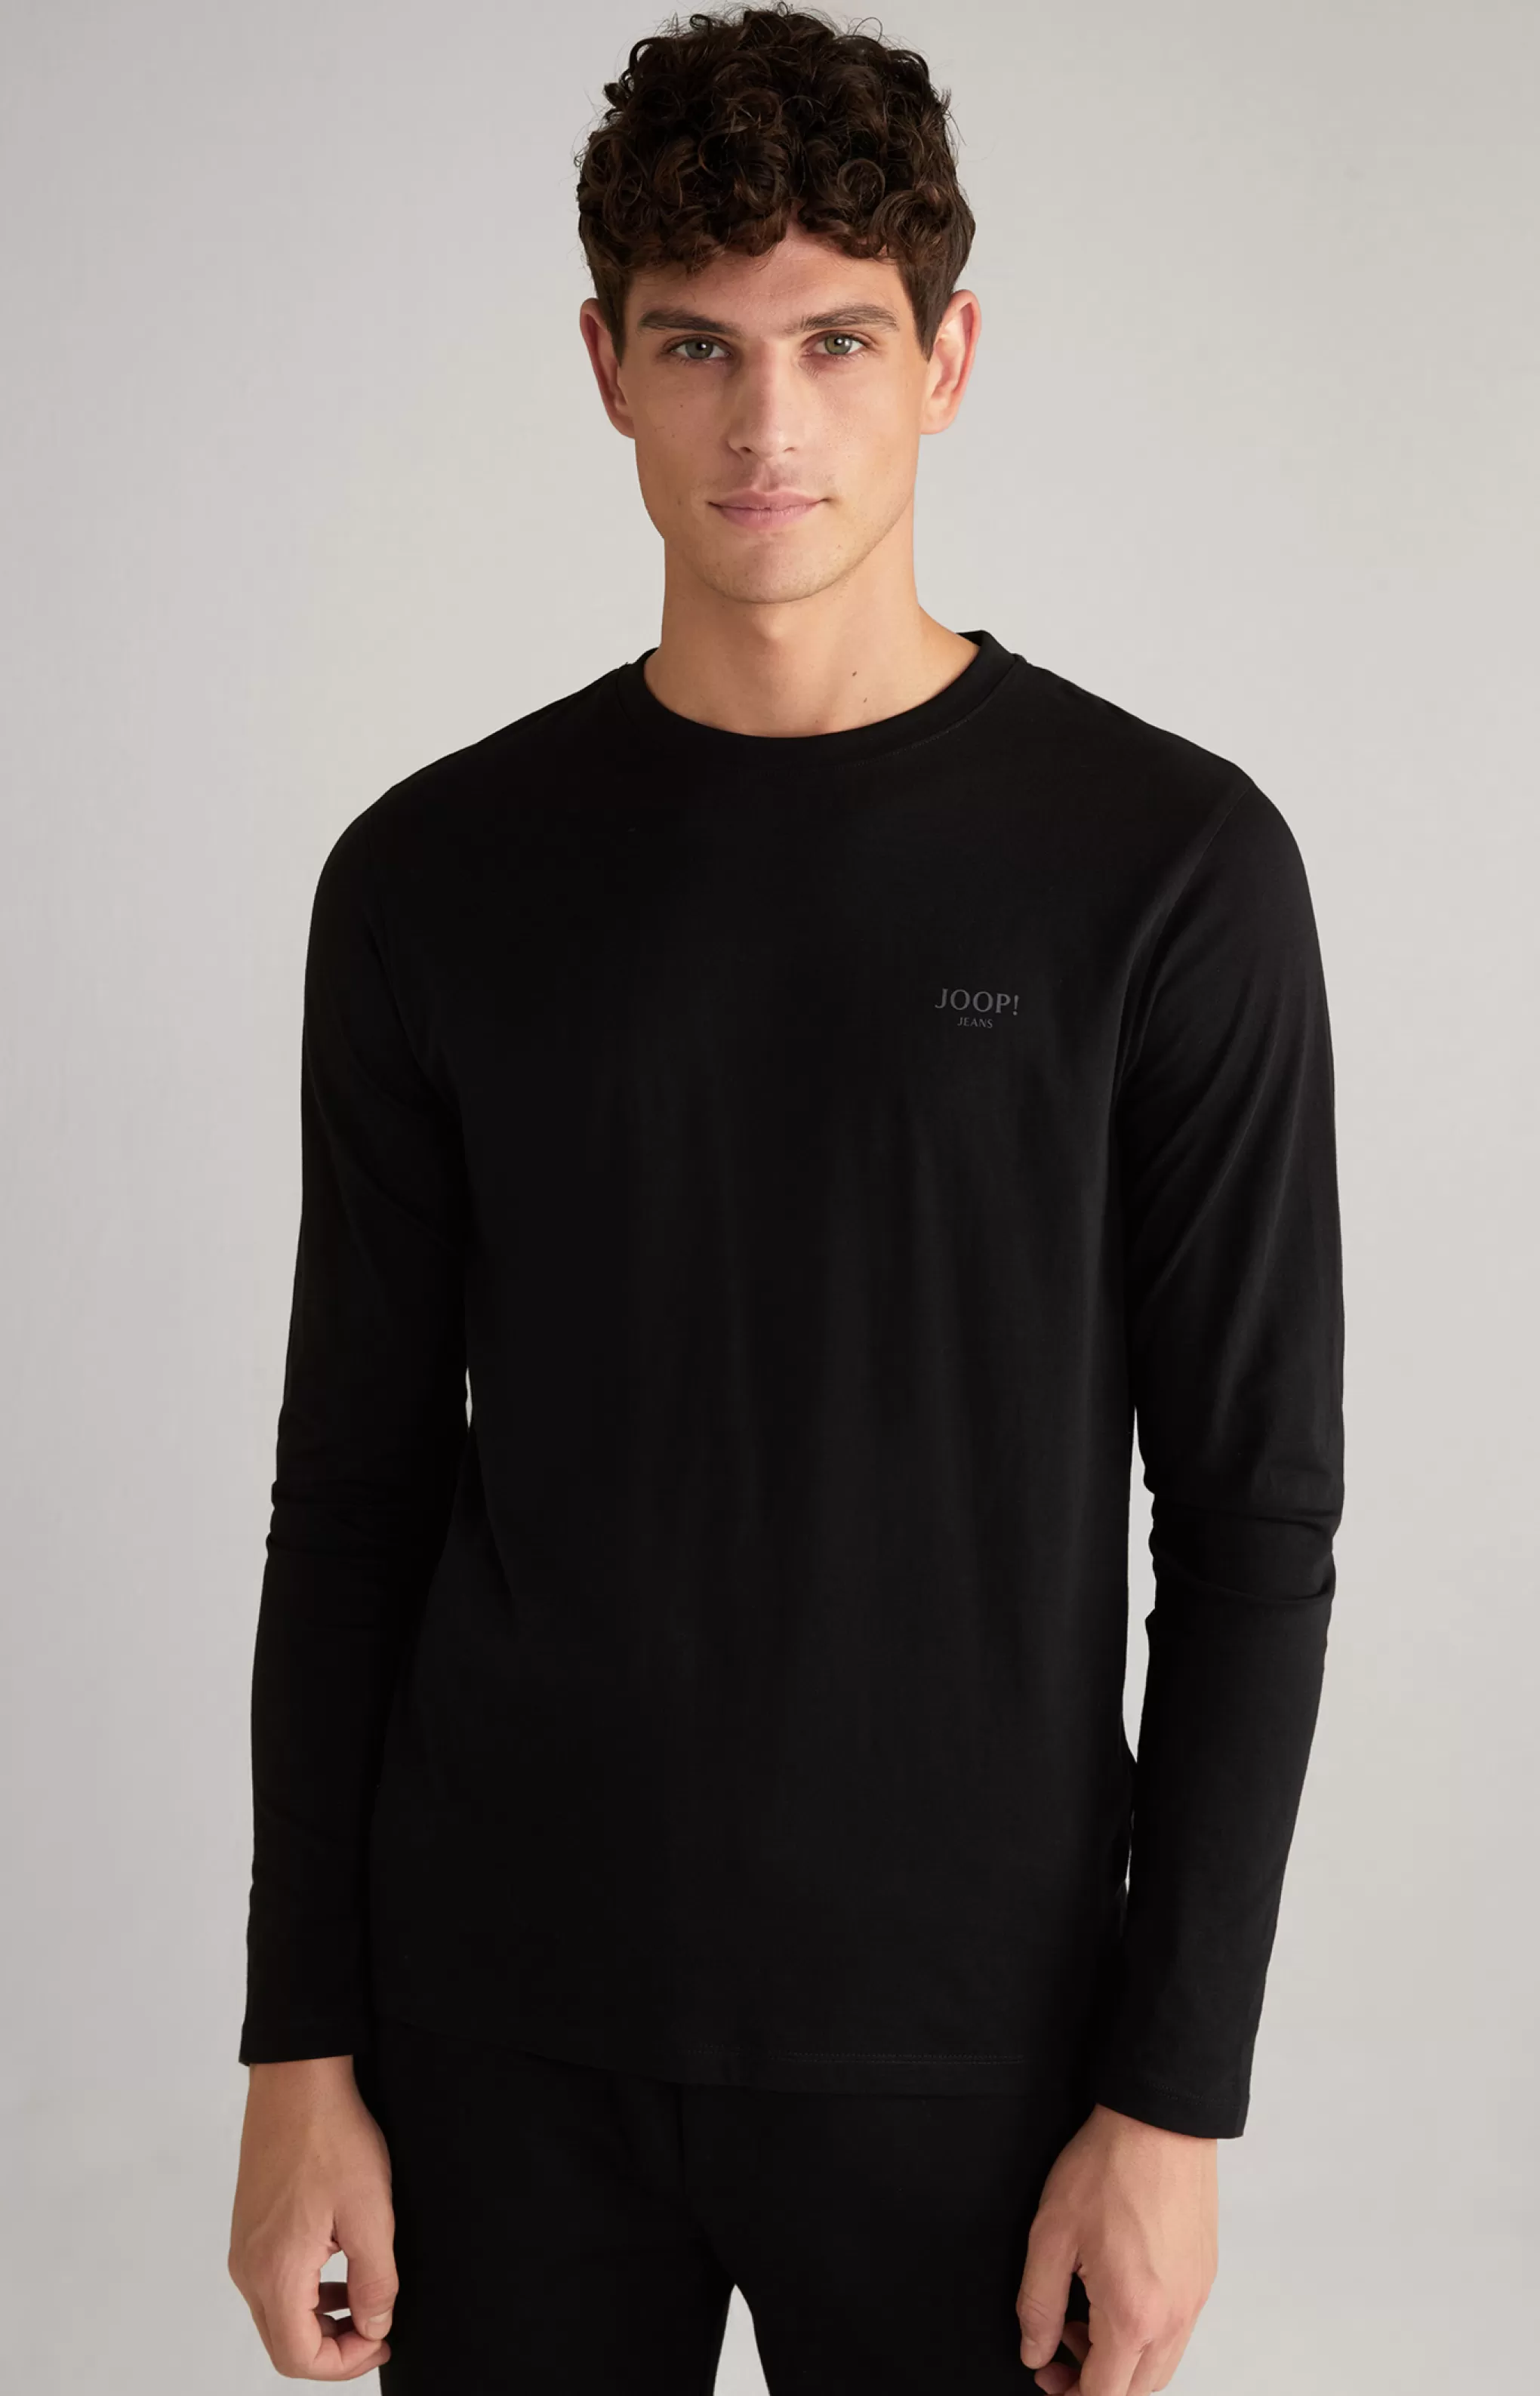 Sweatshirts | T-shirts*JOOP Sweatshirts | T-shirts Alphis Long Sleeve Top in